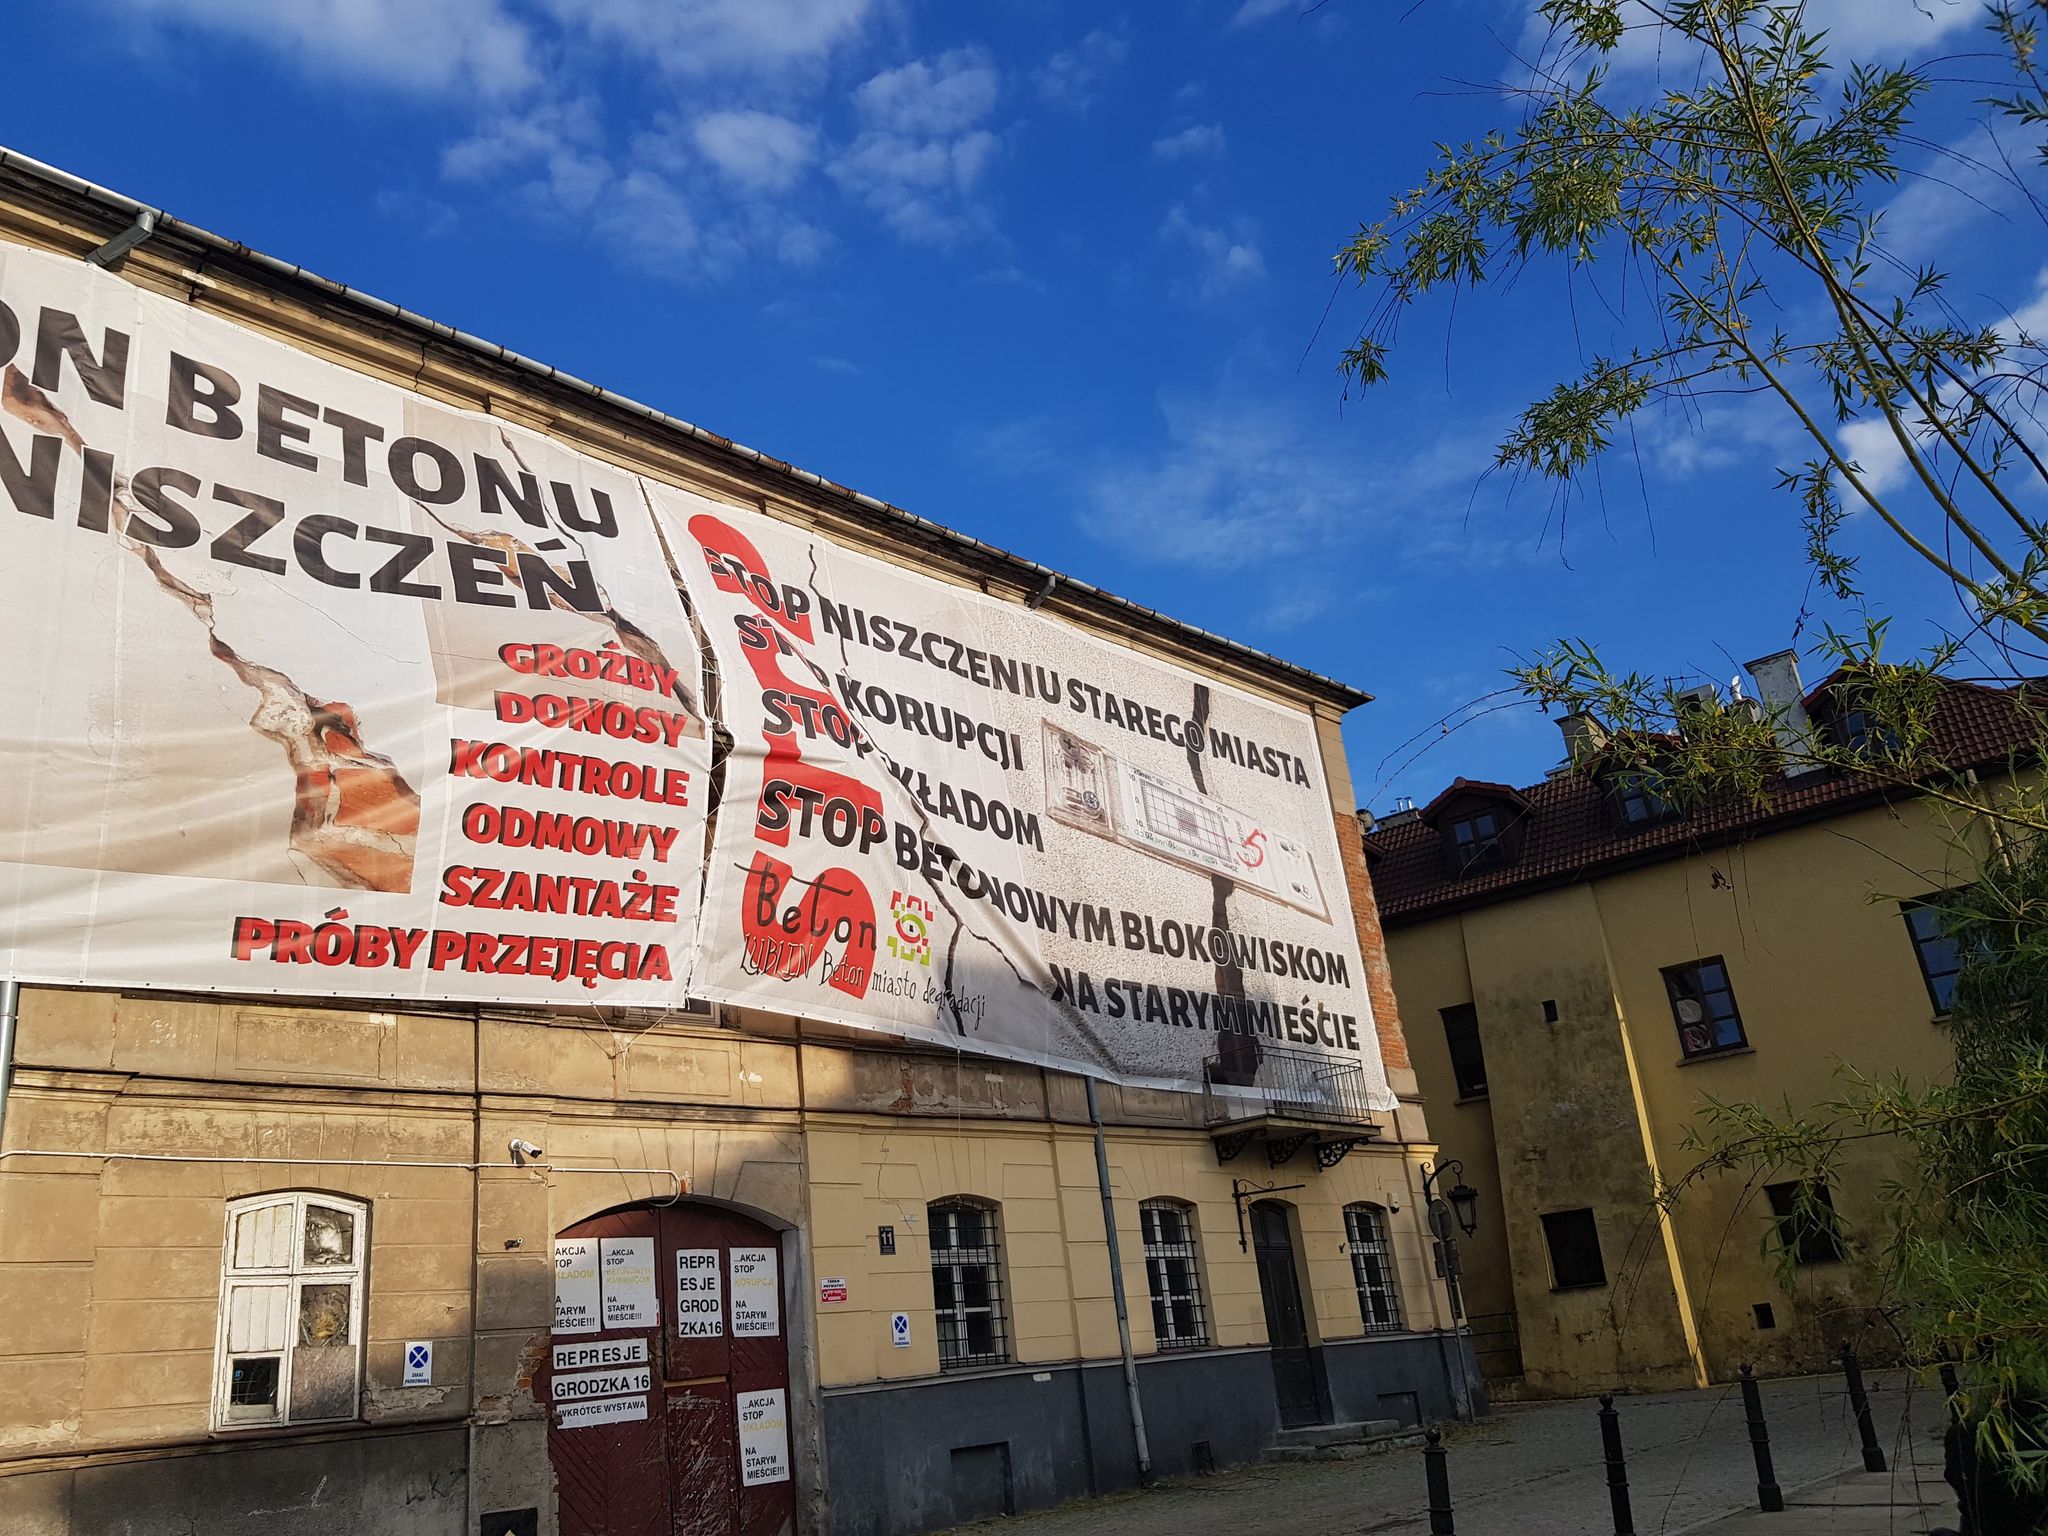 Tajemnicze banery na Starym Mieście: „Układy, korupcja i betonowe blokowisko” (zdjęcia)